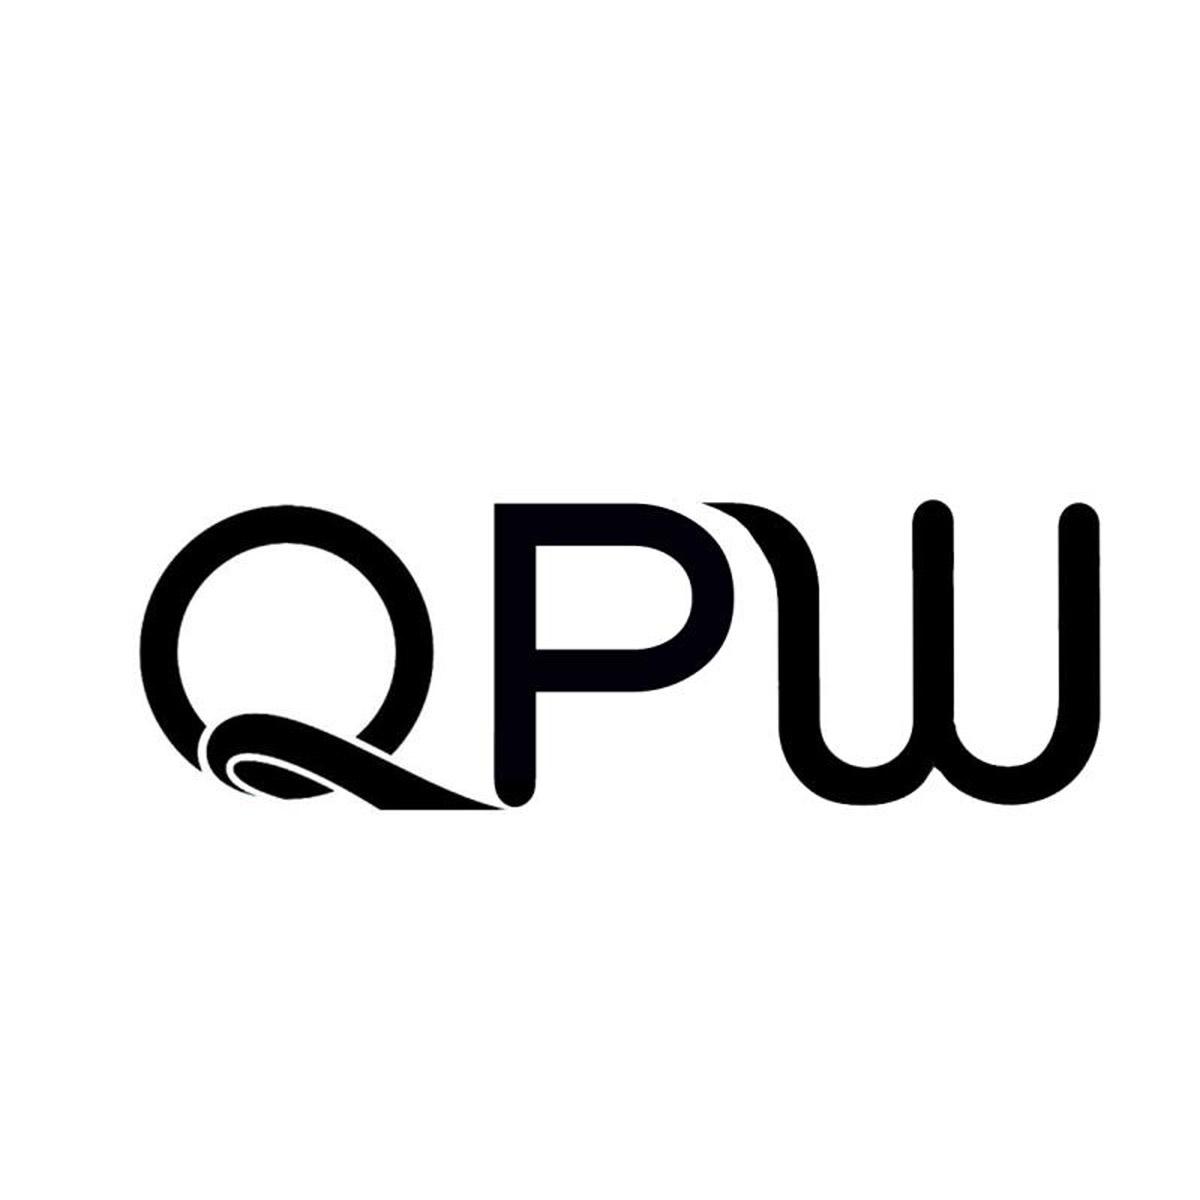 QPW